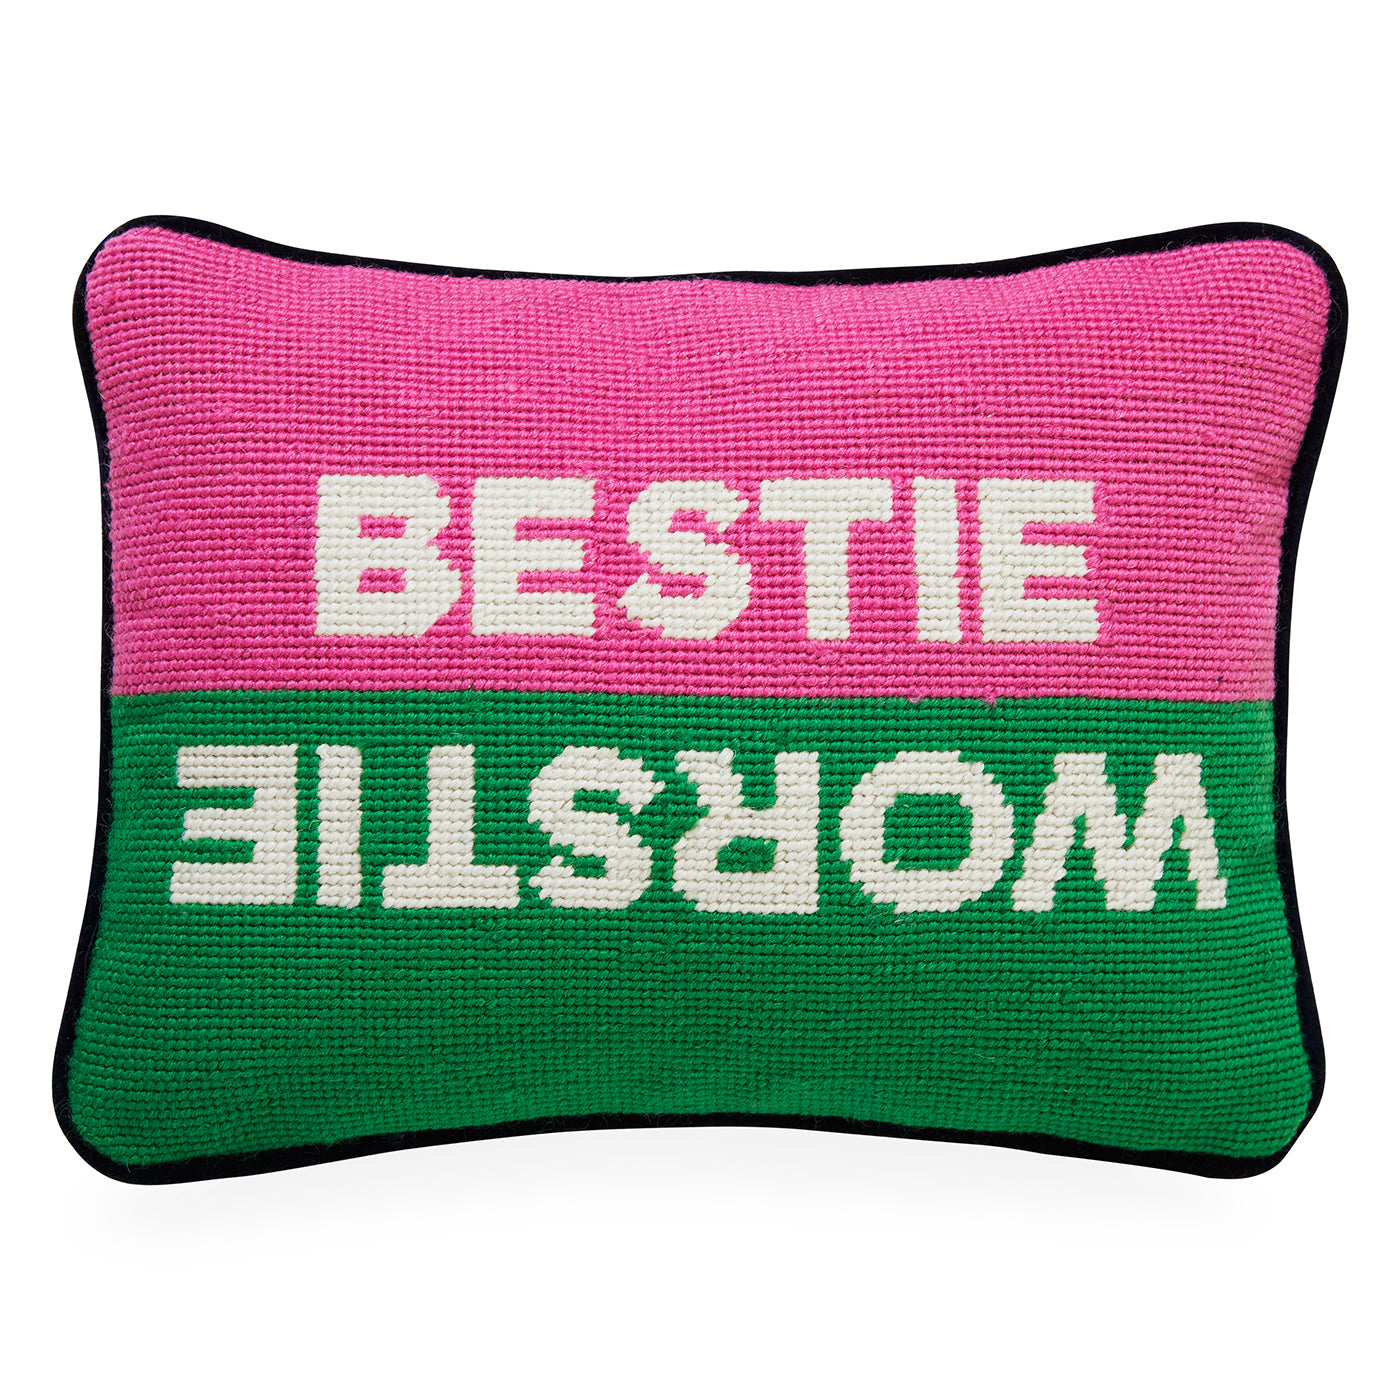 Bestie Worstie Needlepoint Cushion